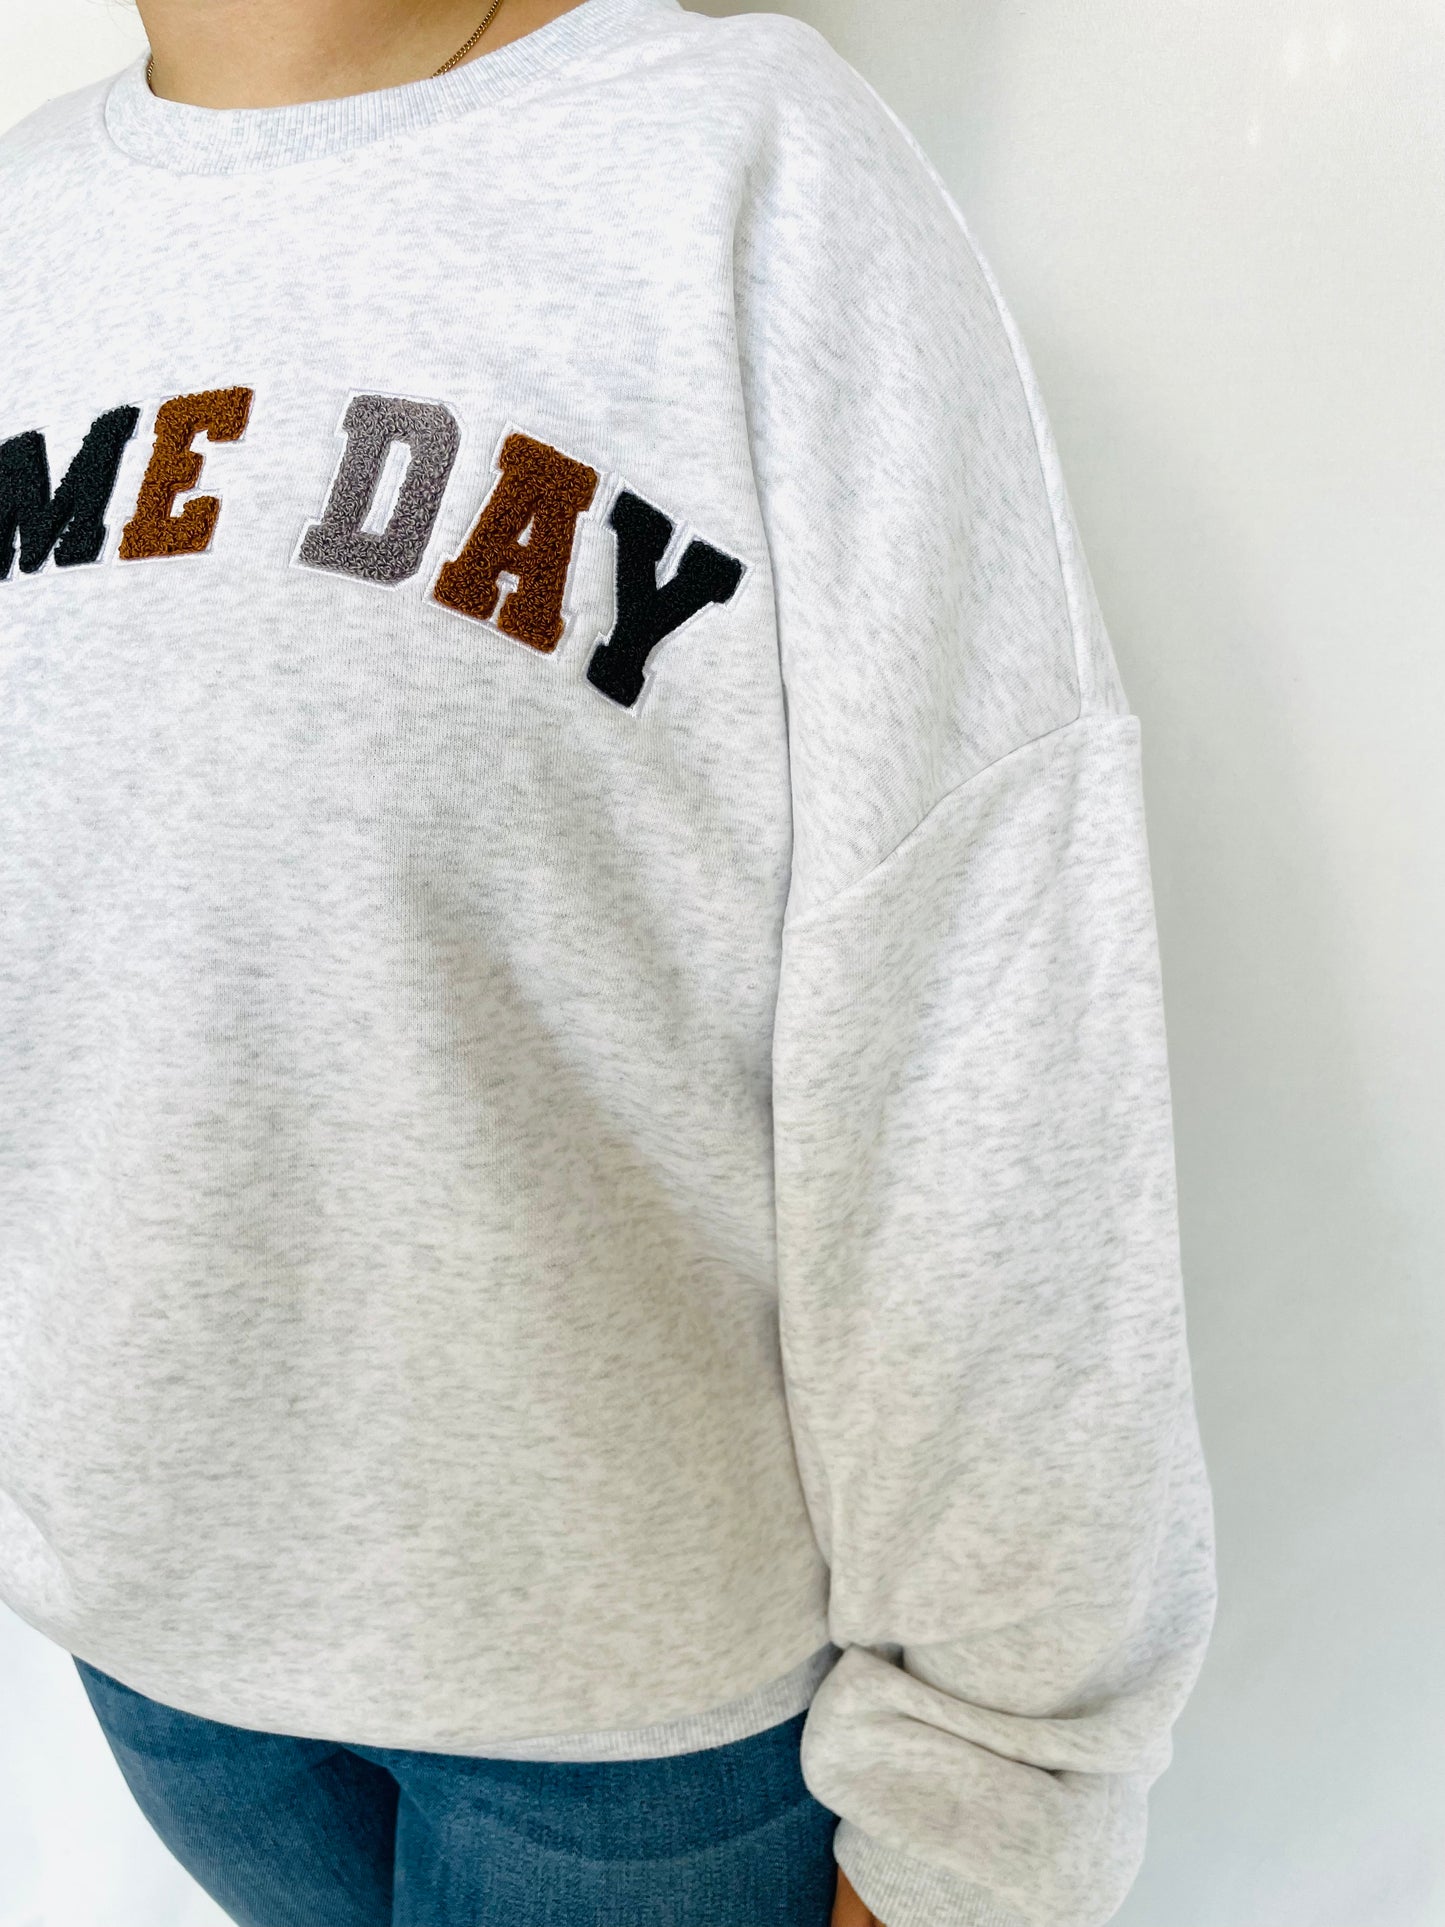 Gameday Sweatshirt